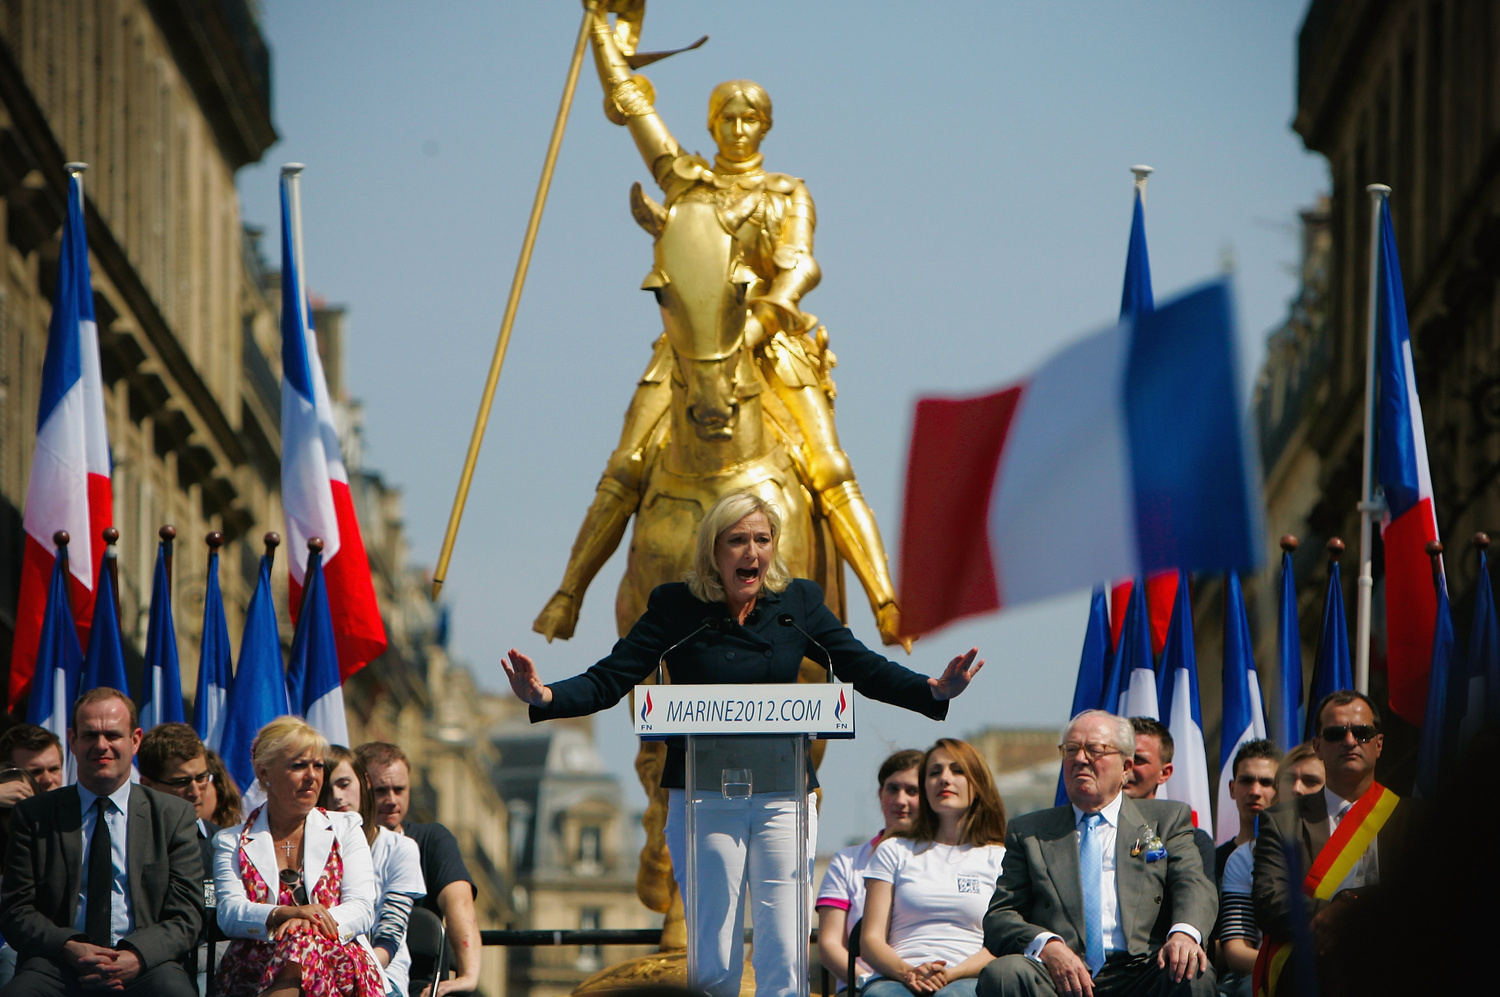 Index - Külföld - Kik szavaznak Marine Le Penre?